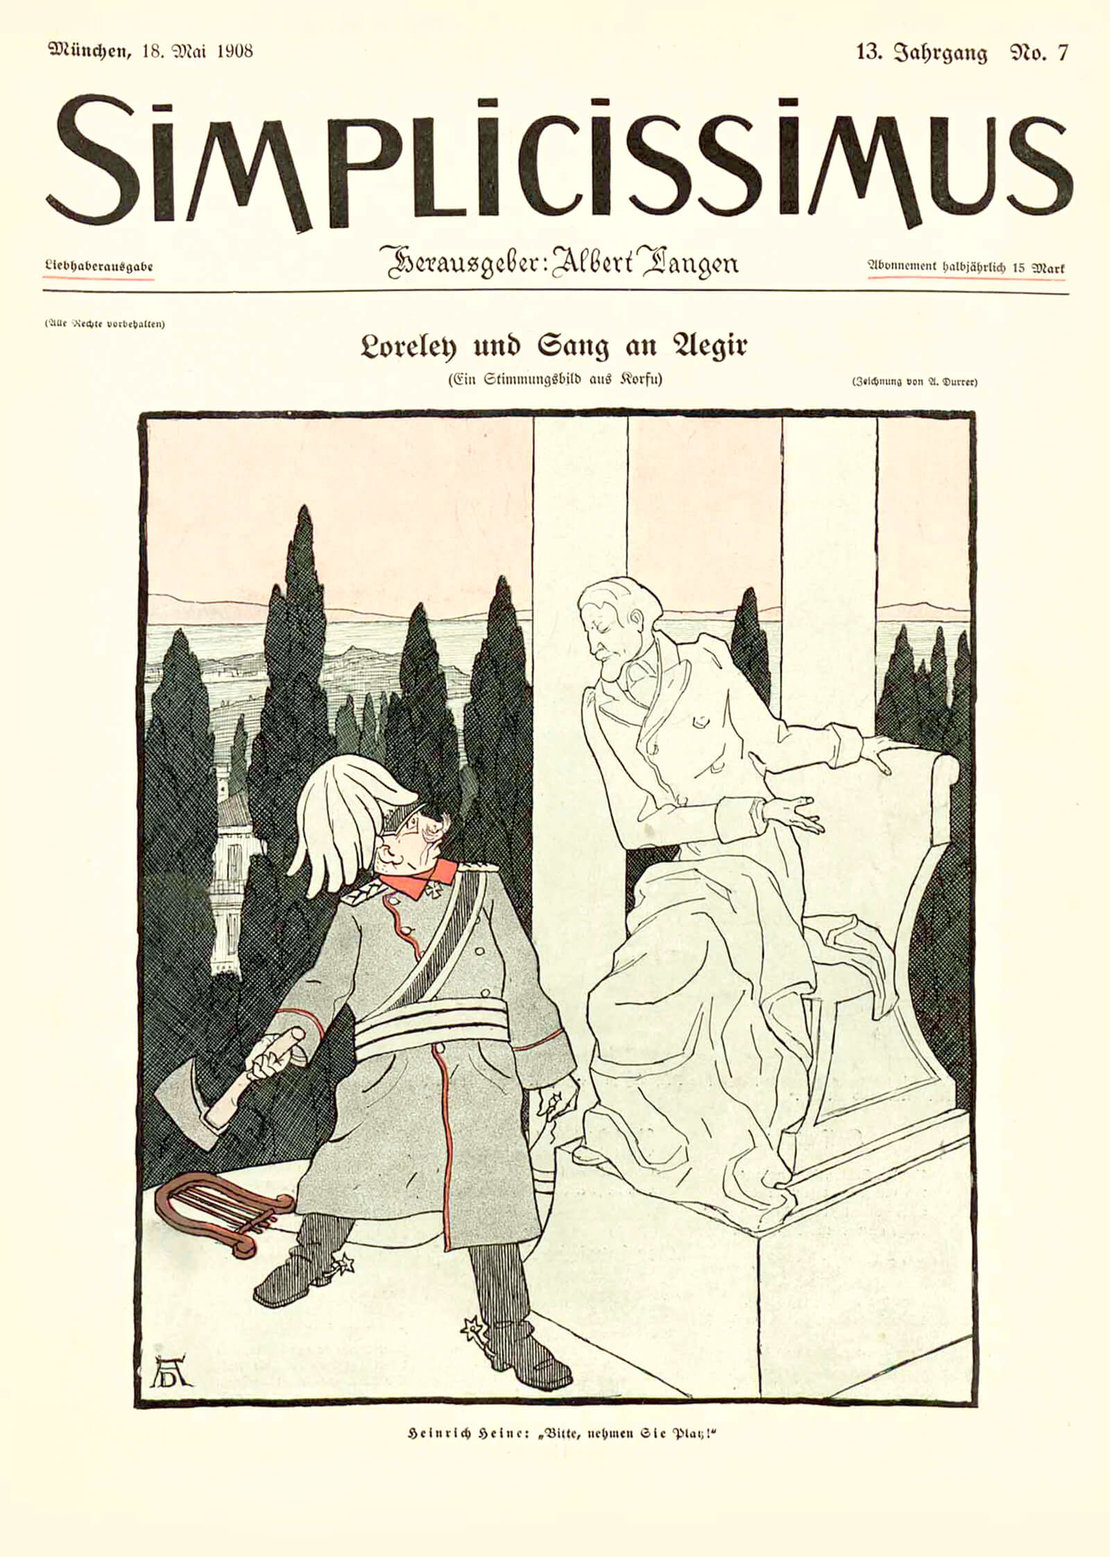 Karikatur in der Zeitschrift „Simplicissimus“, Mai 1908 